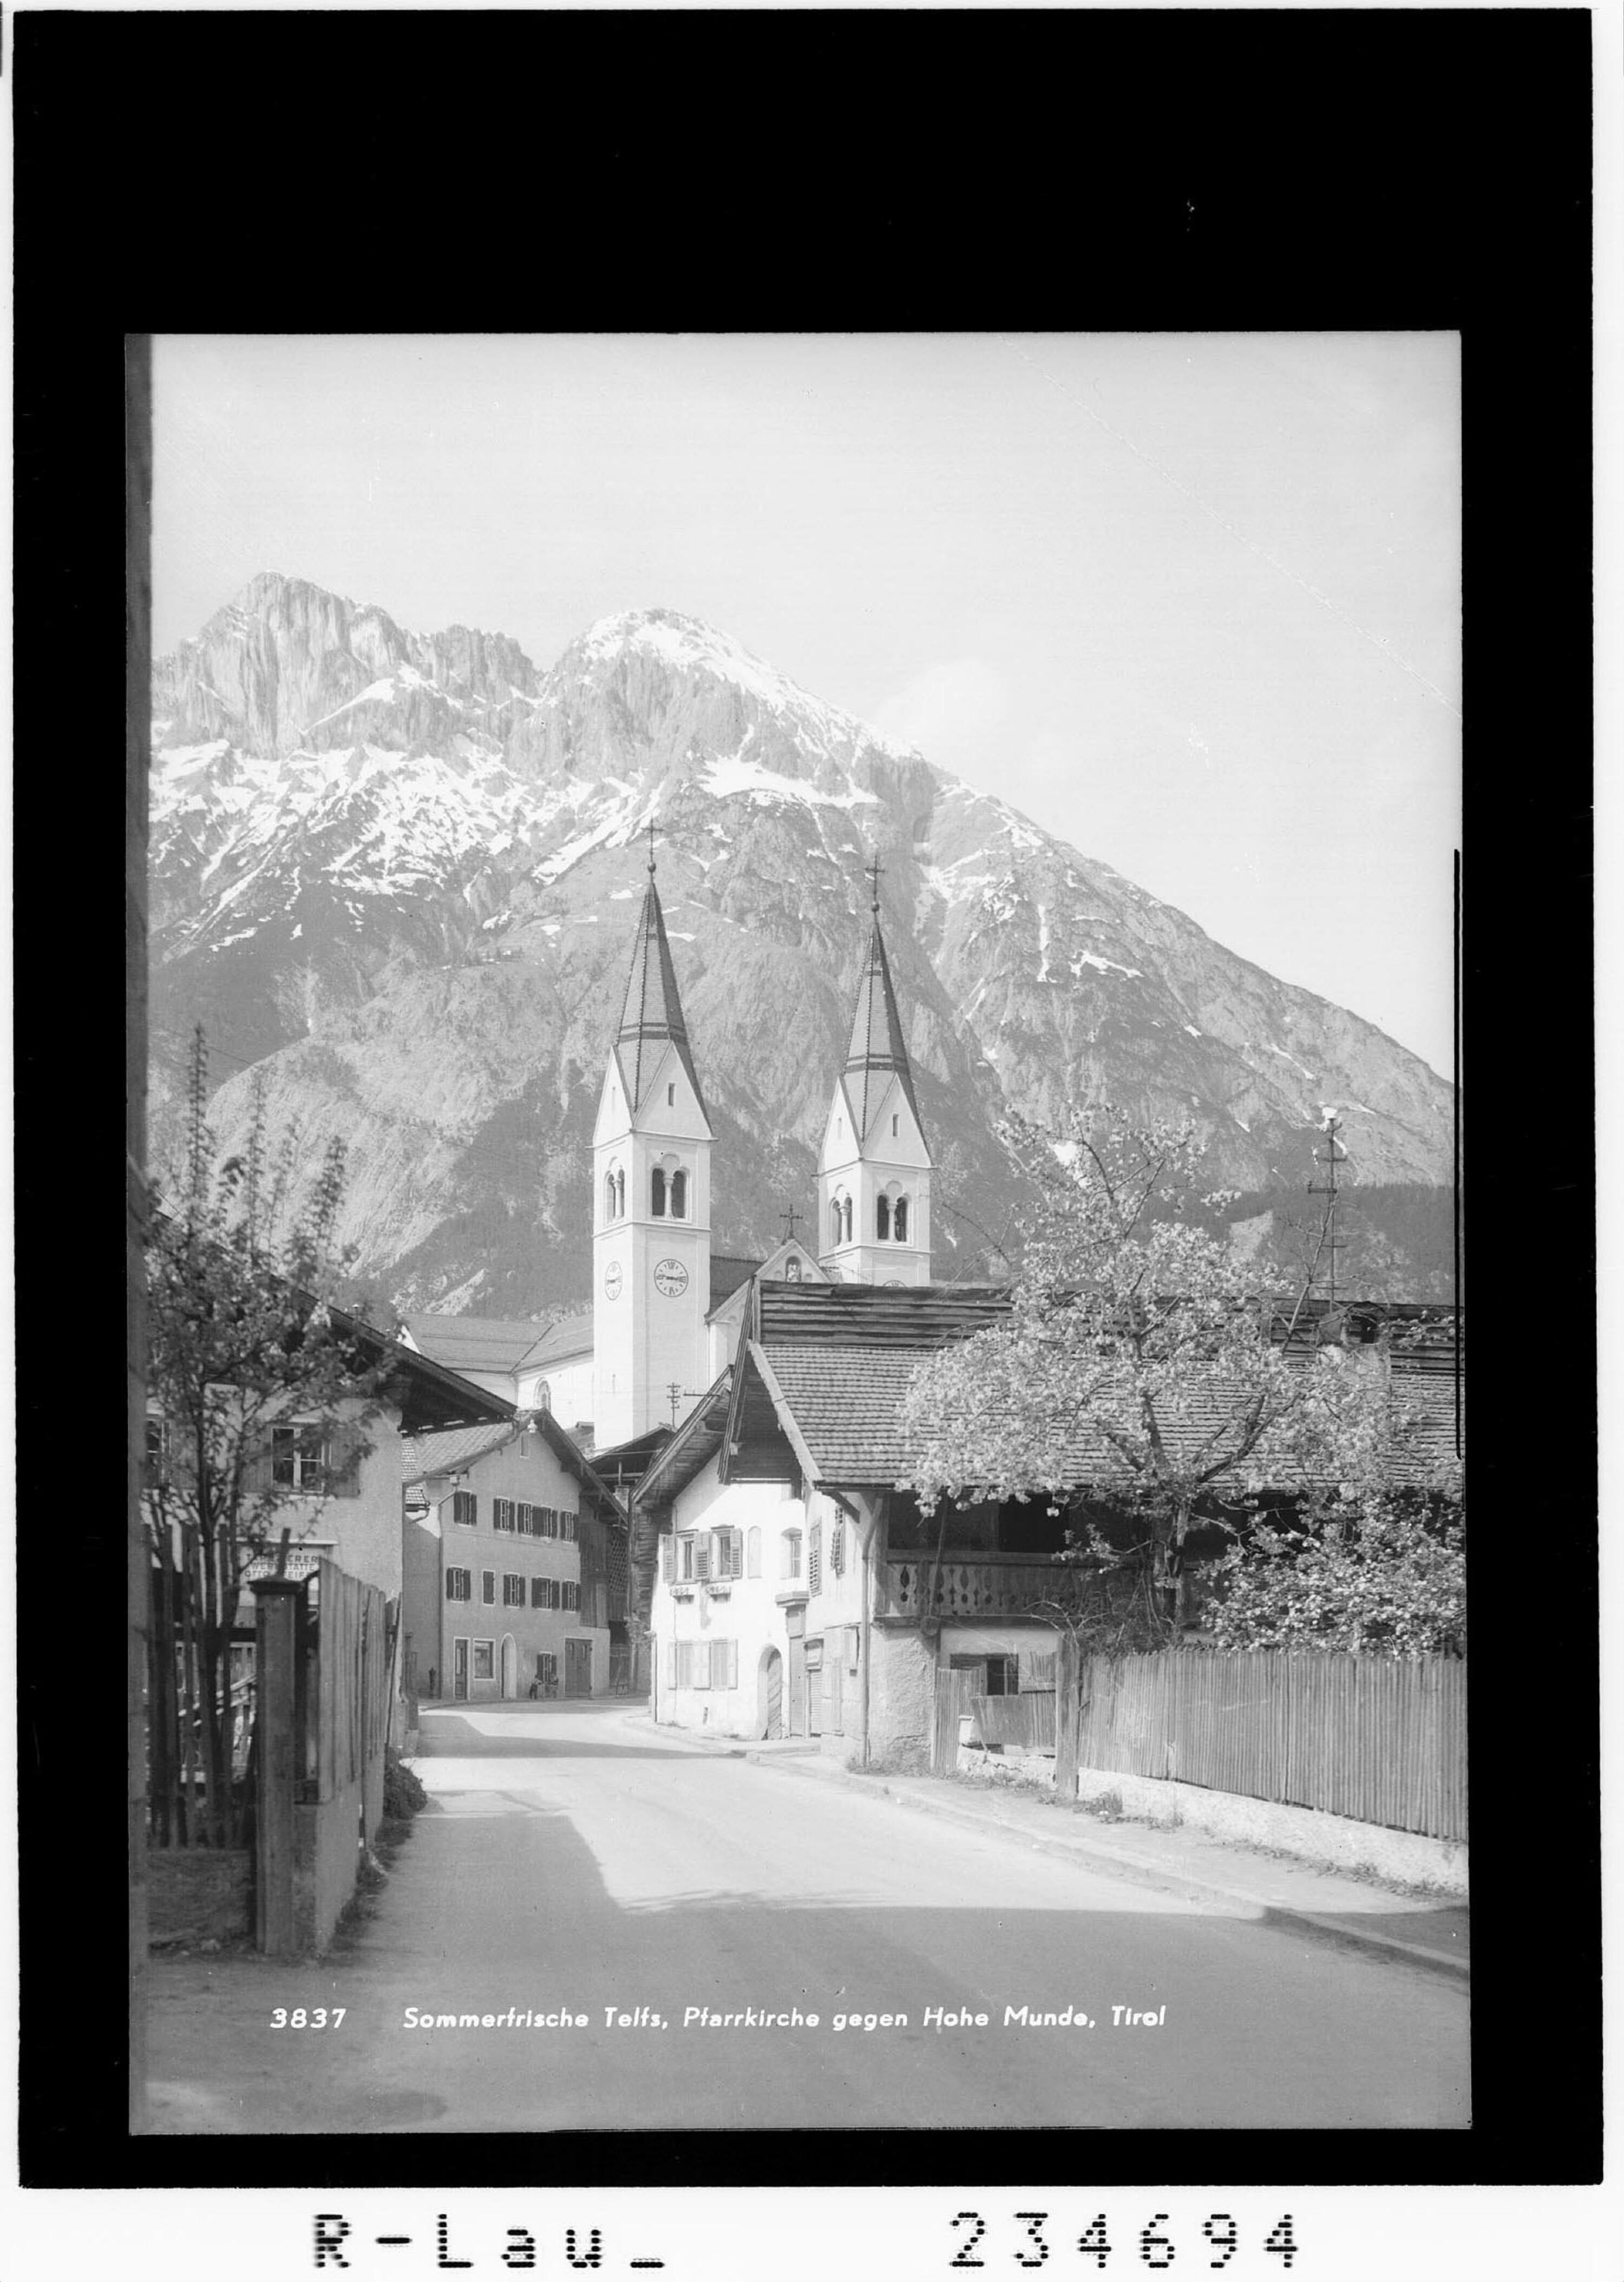 Sommerfrische Telfs - Pfarrkirche gegen Hohe Munde / Tirol></div>


    <hr>
    <div class=